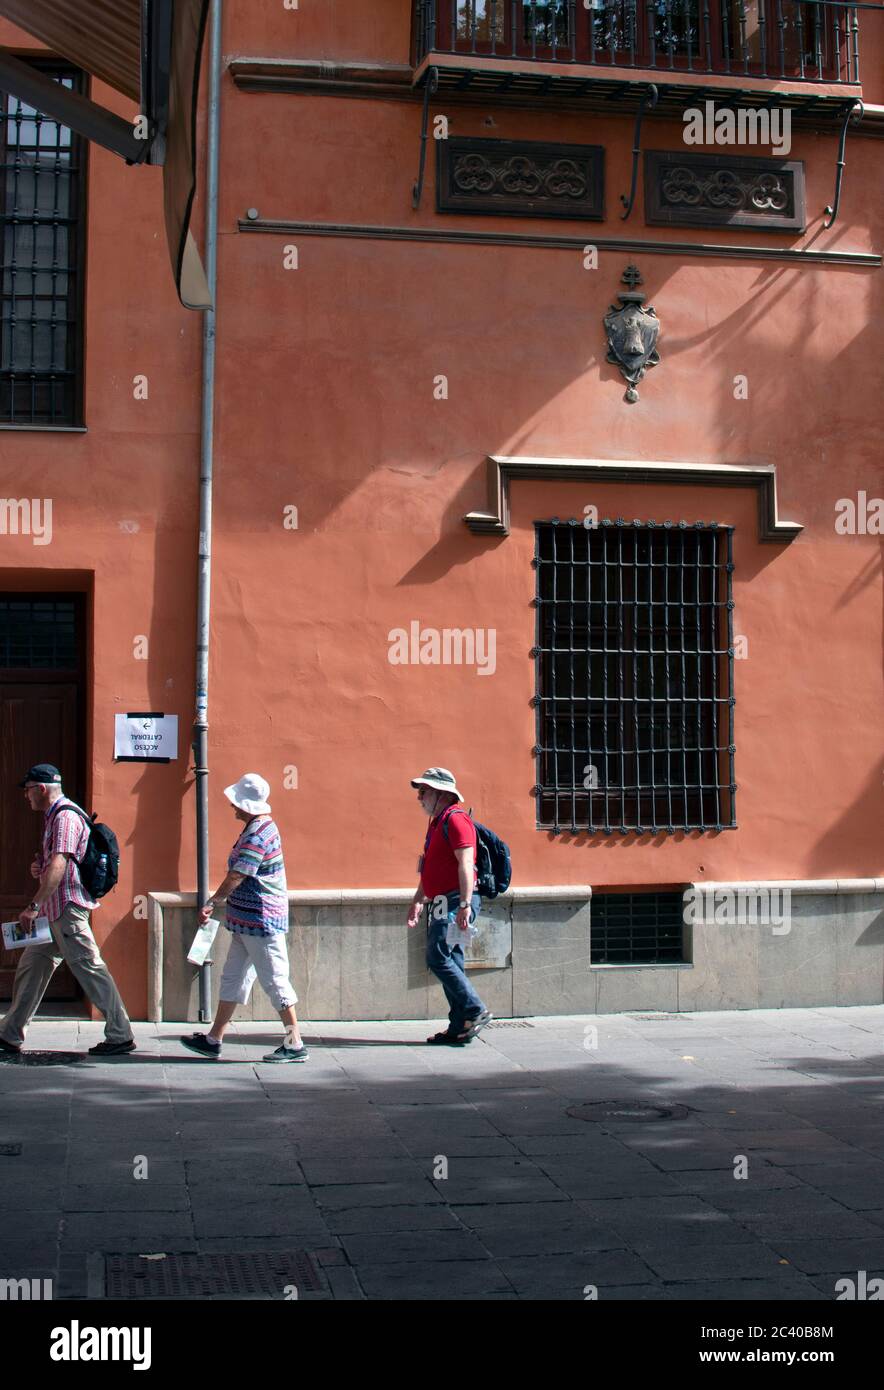 Die wunderschöne, historische spanische Stadt Granada. Touristen gehen an einem späten Sommertag an einem schönen alten Gebäude an der Plaza Bib Rambla in der Altstadt vorbei. Stockfoto